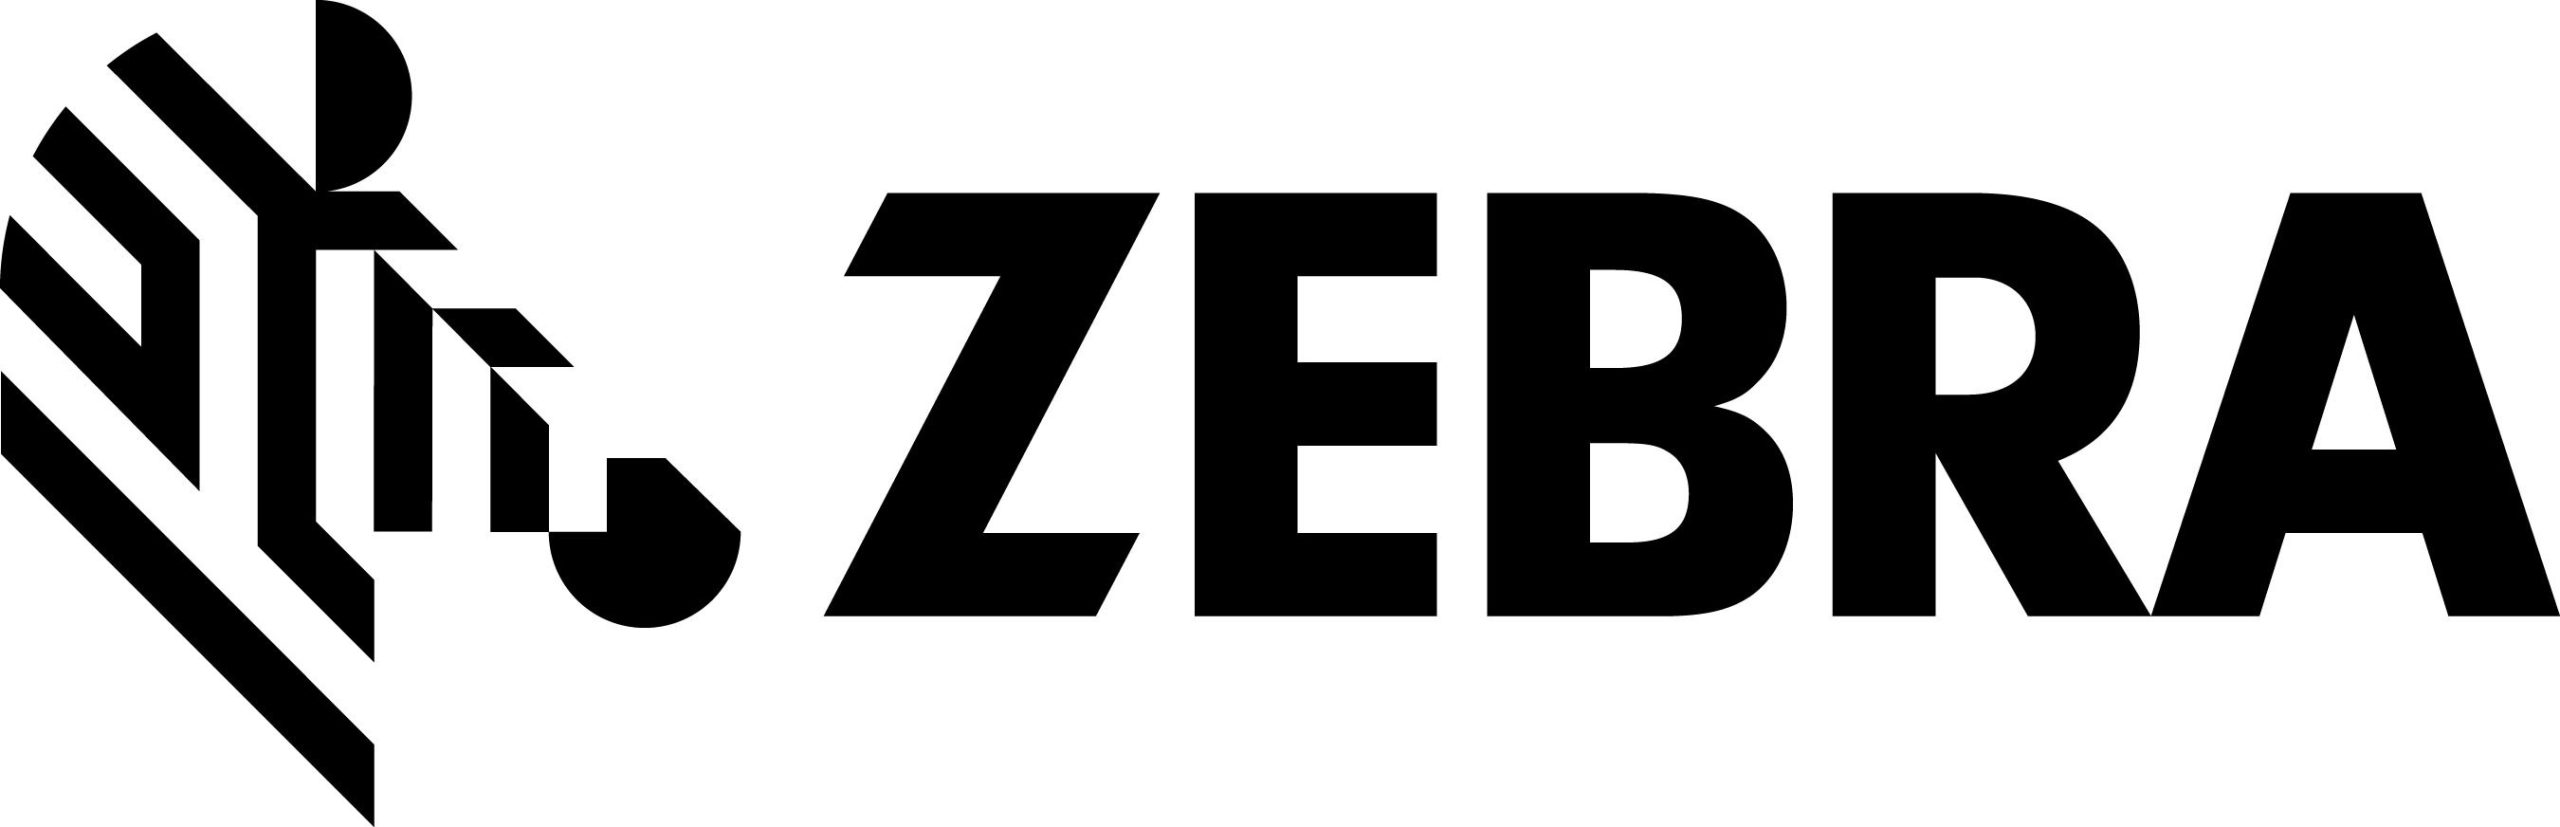 Zebra Logo. (PRNewsFoto/Zebra Technologies Corporation)